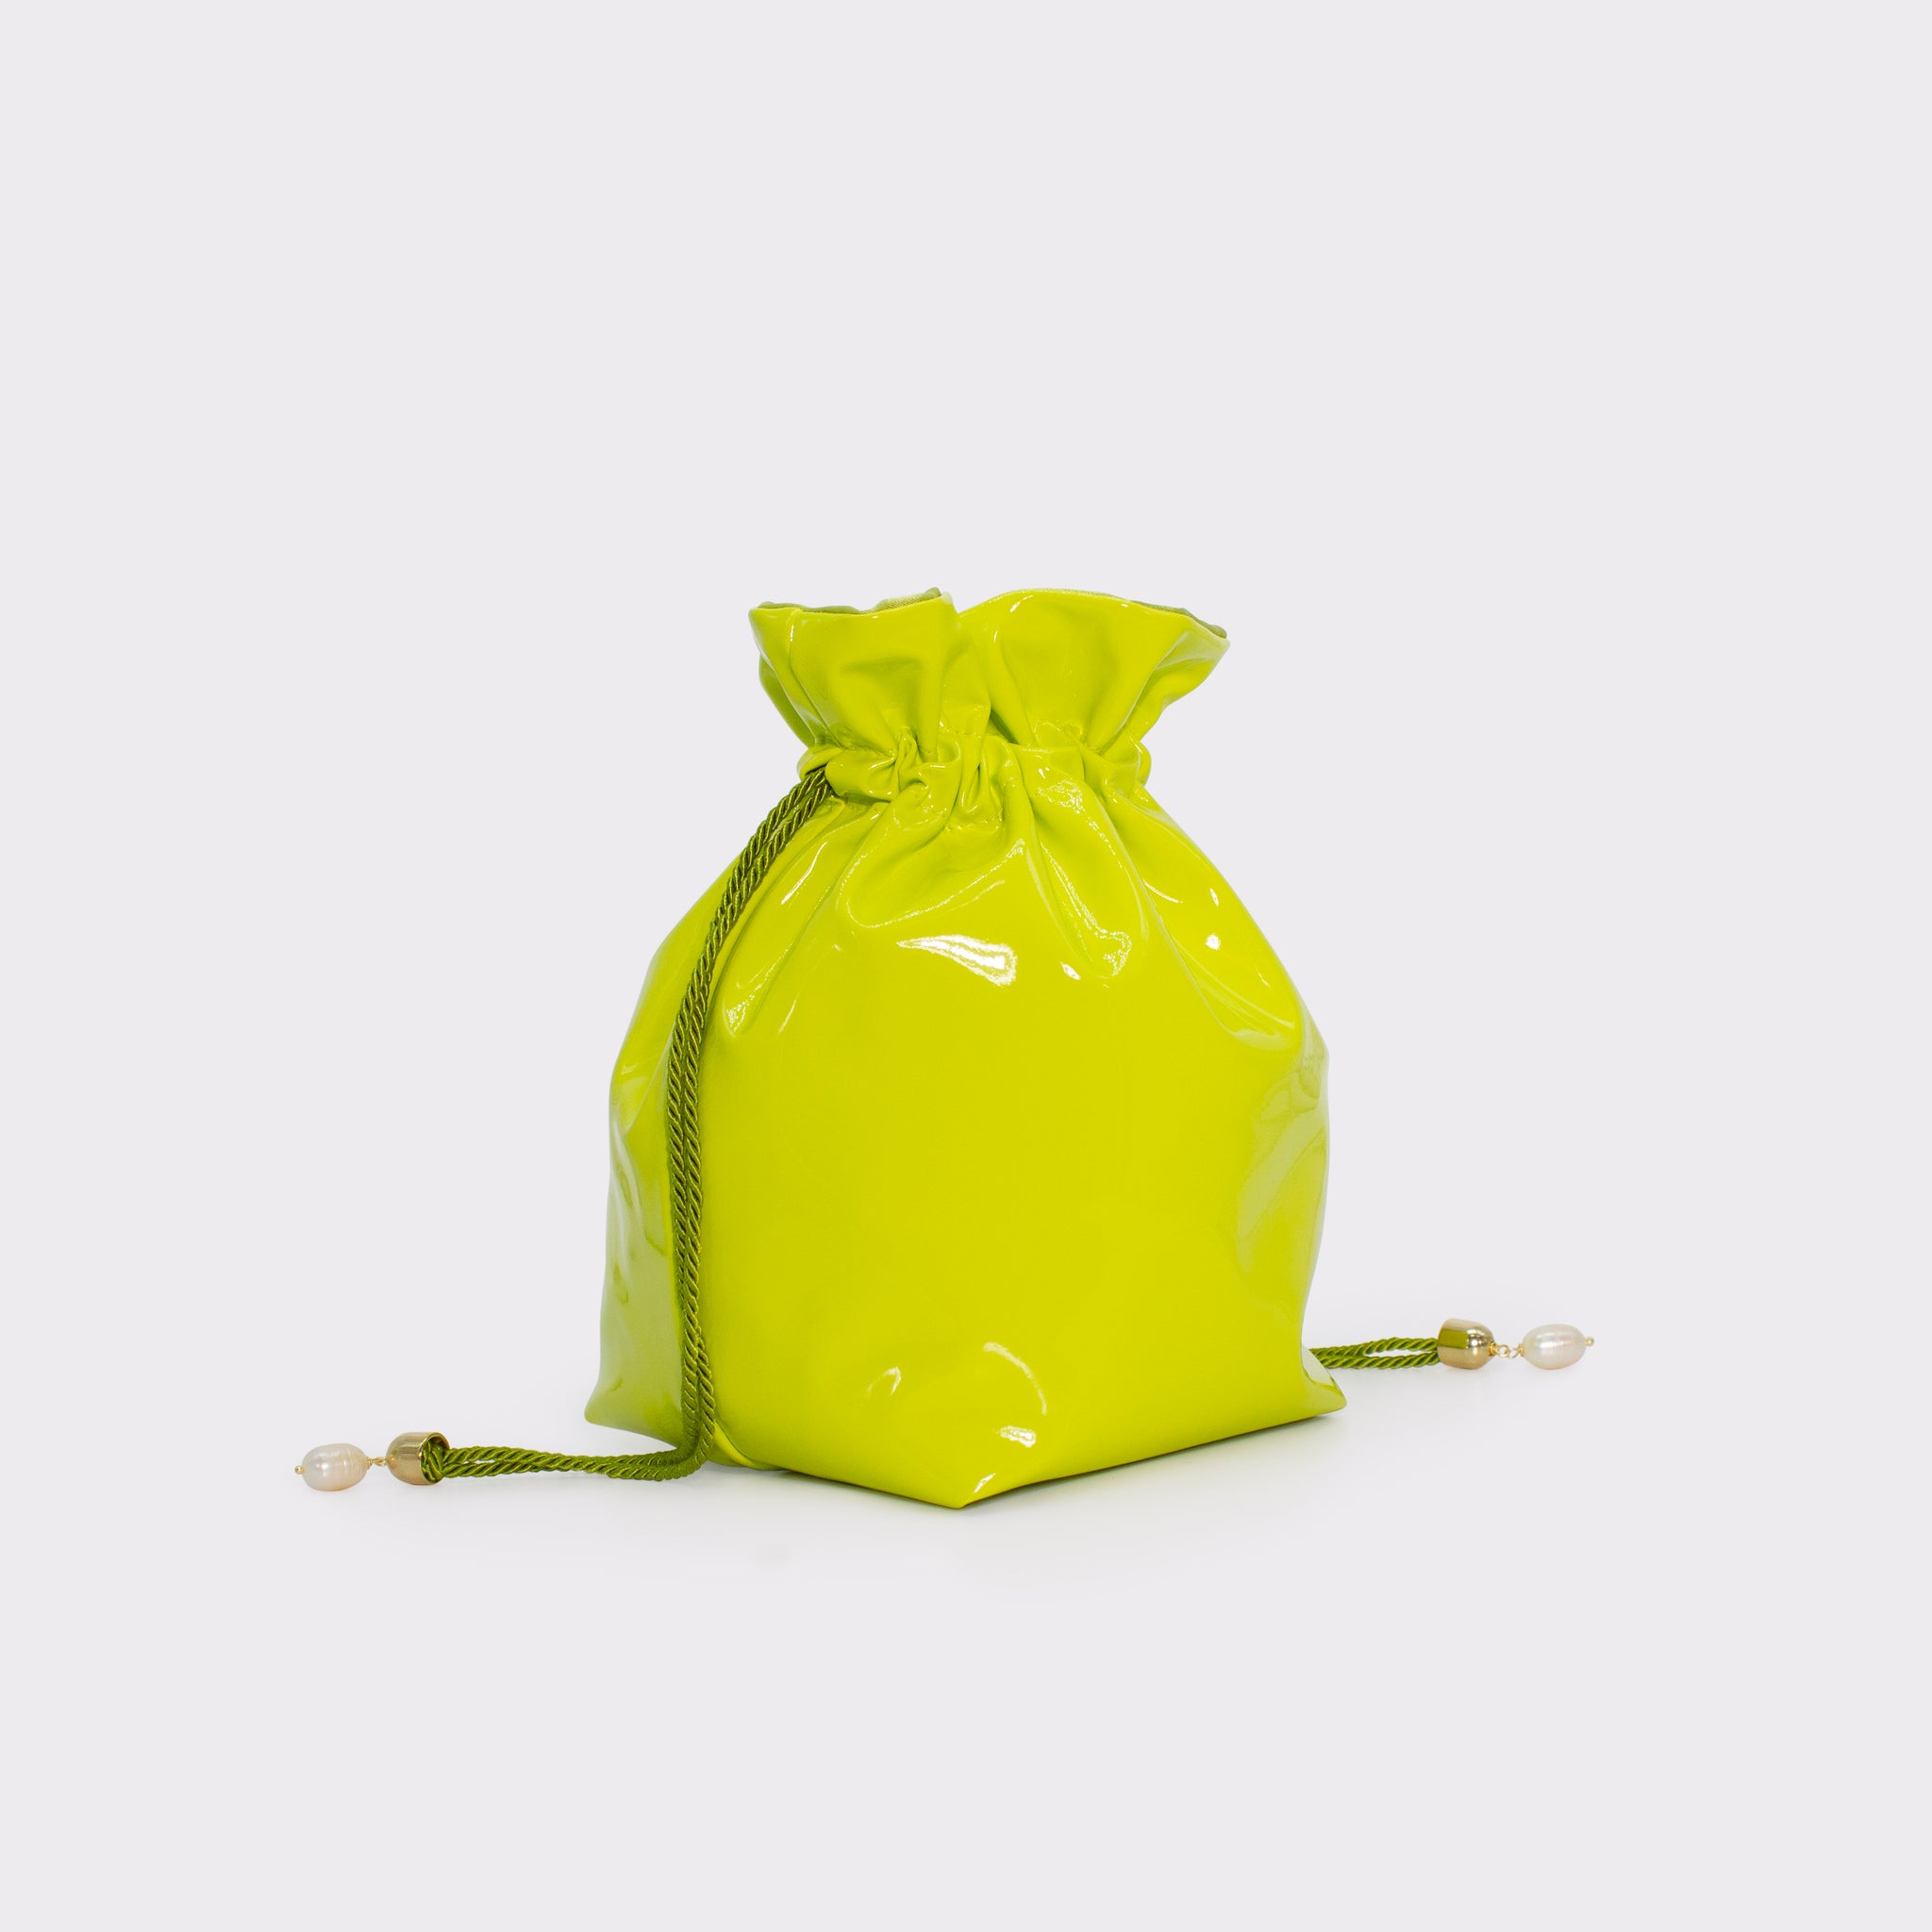 La Glossy bucket bag in colorazione lime